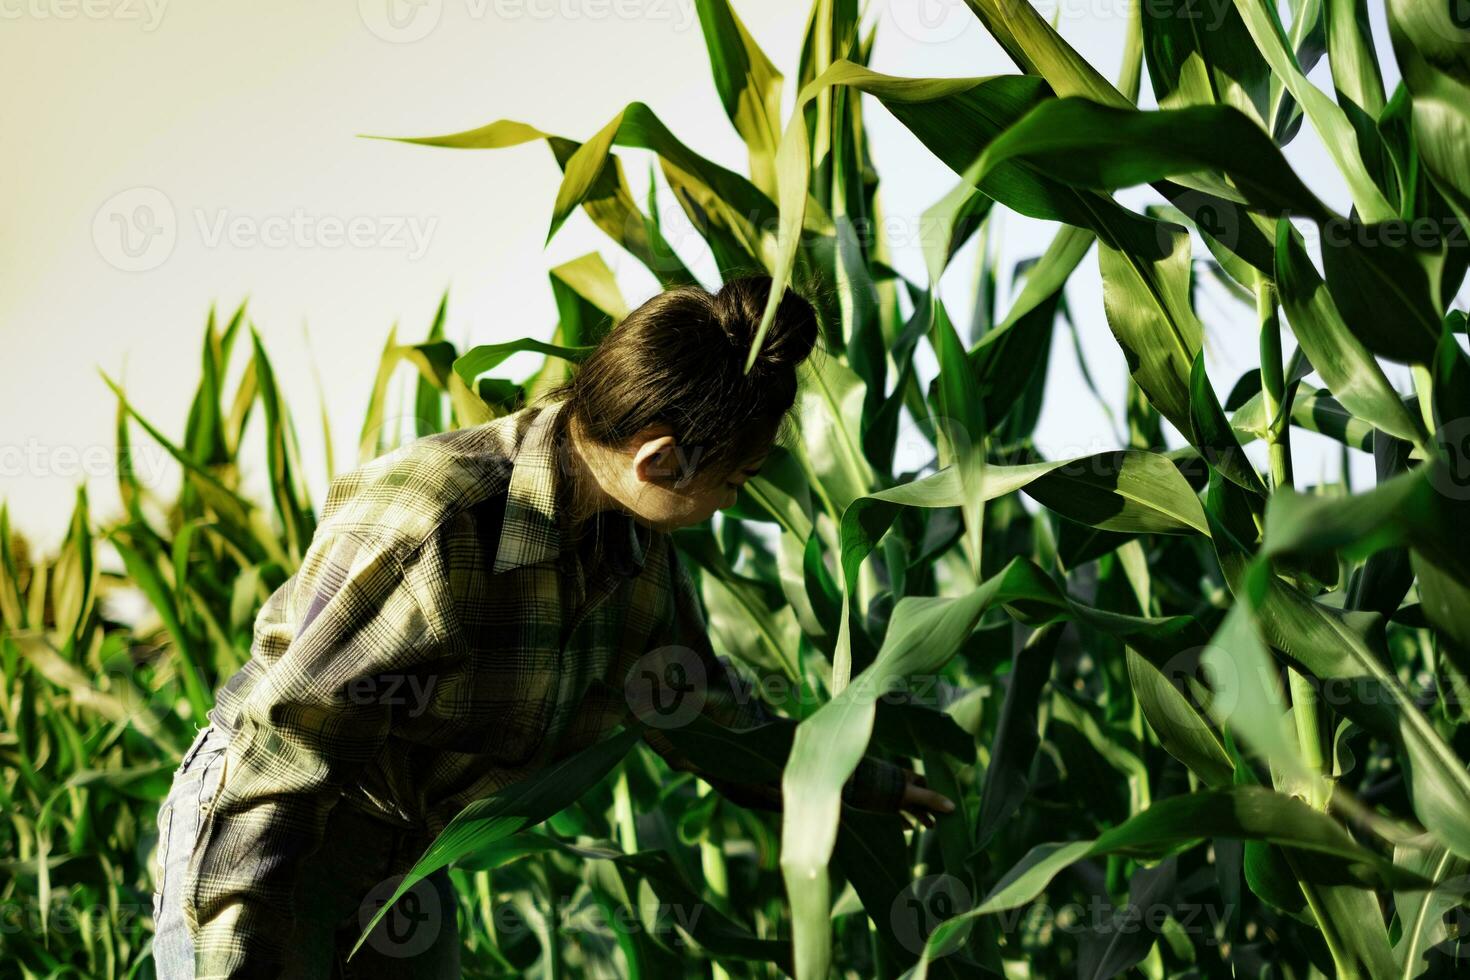 jovem agricultor observando alguns gráficos de milho em campo foto